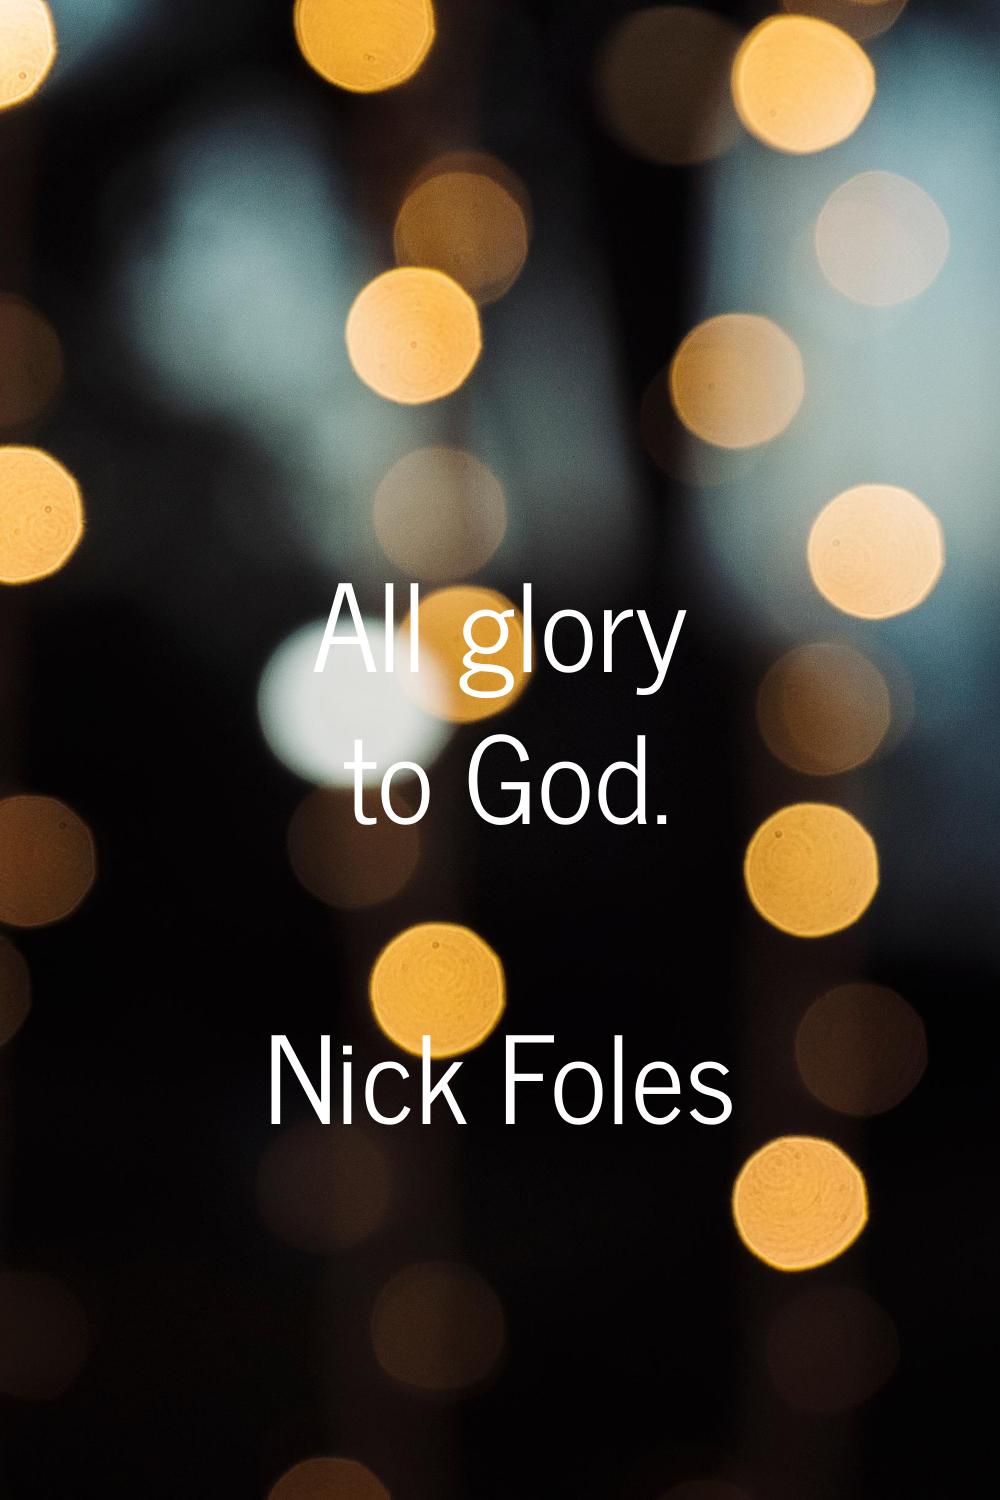 All glory to God.